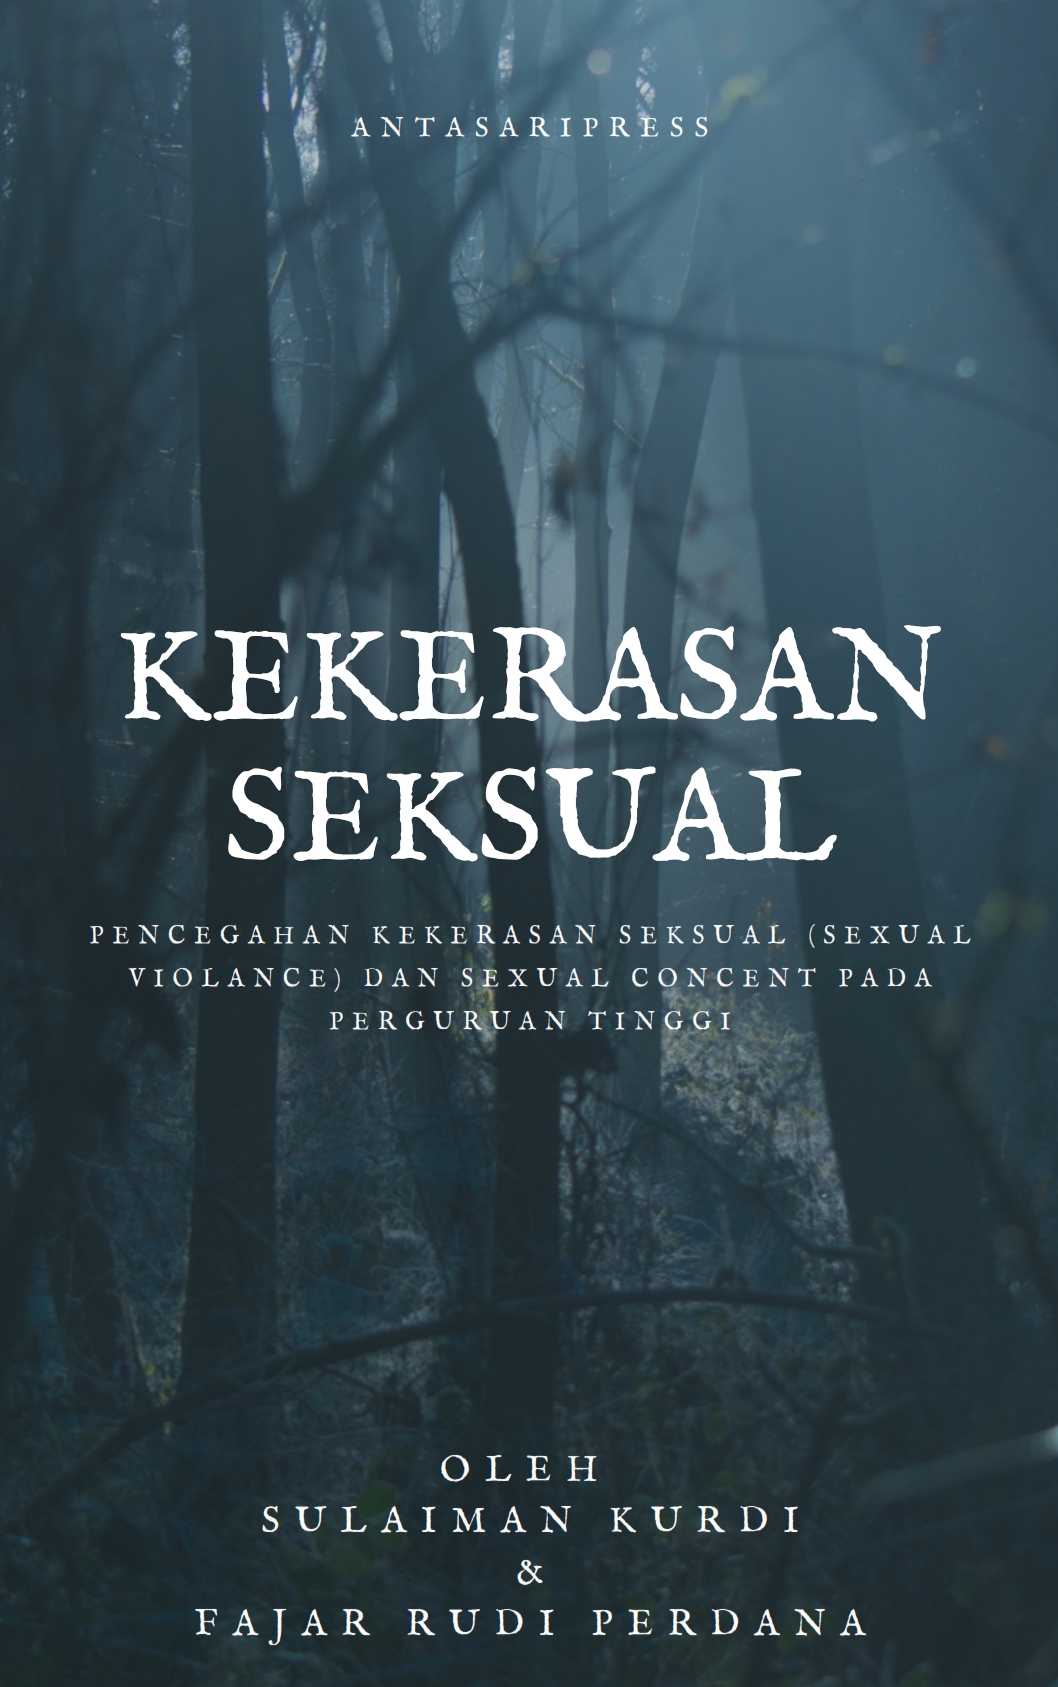 Book Cover: Pencegahan Kekerasan Seksual (Sexual Violence) Dan Sexual Consent Pada Perguruan Tinggi